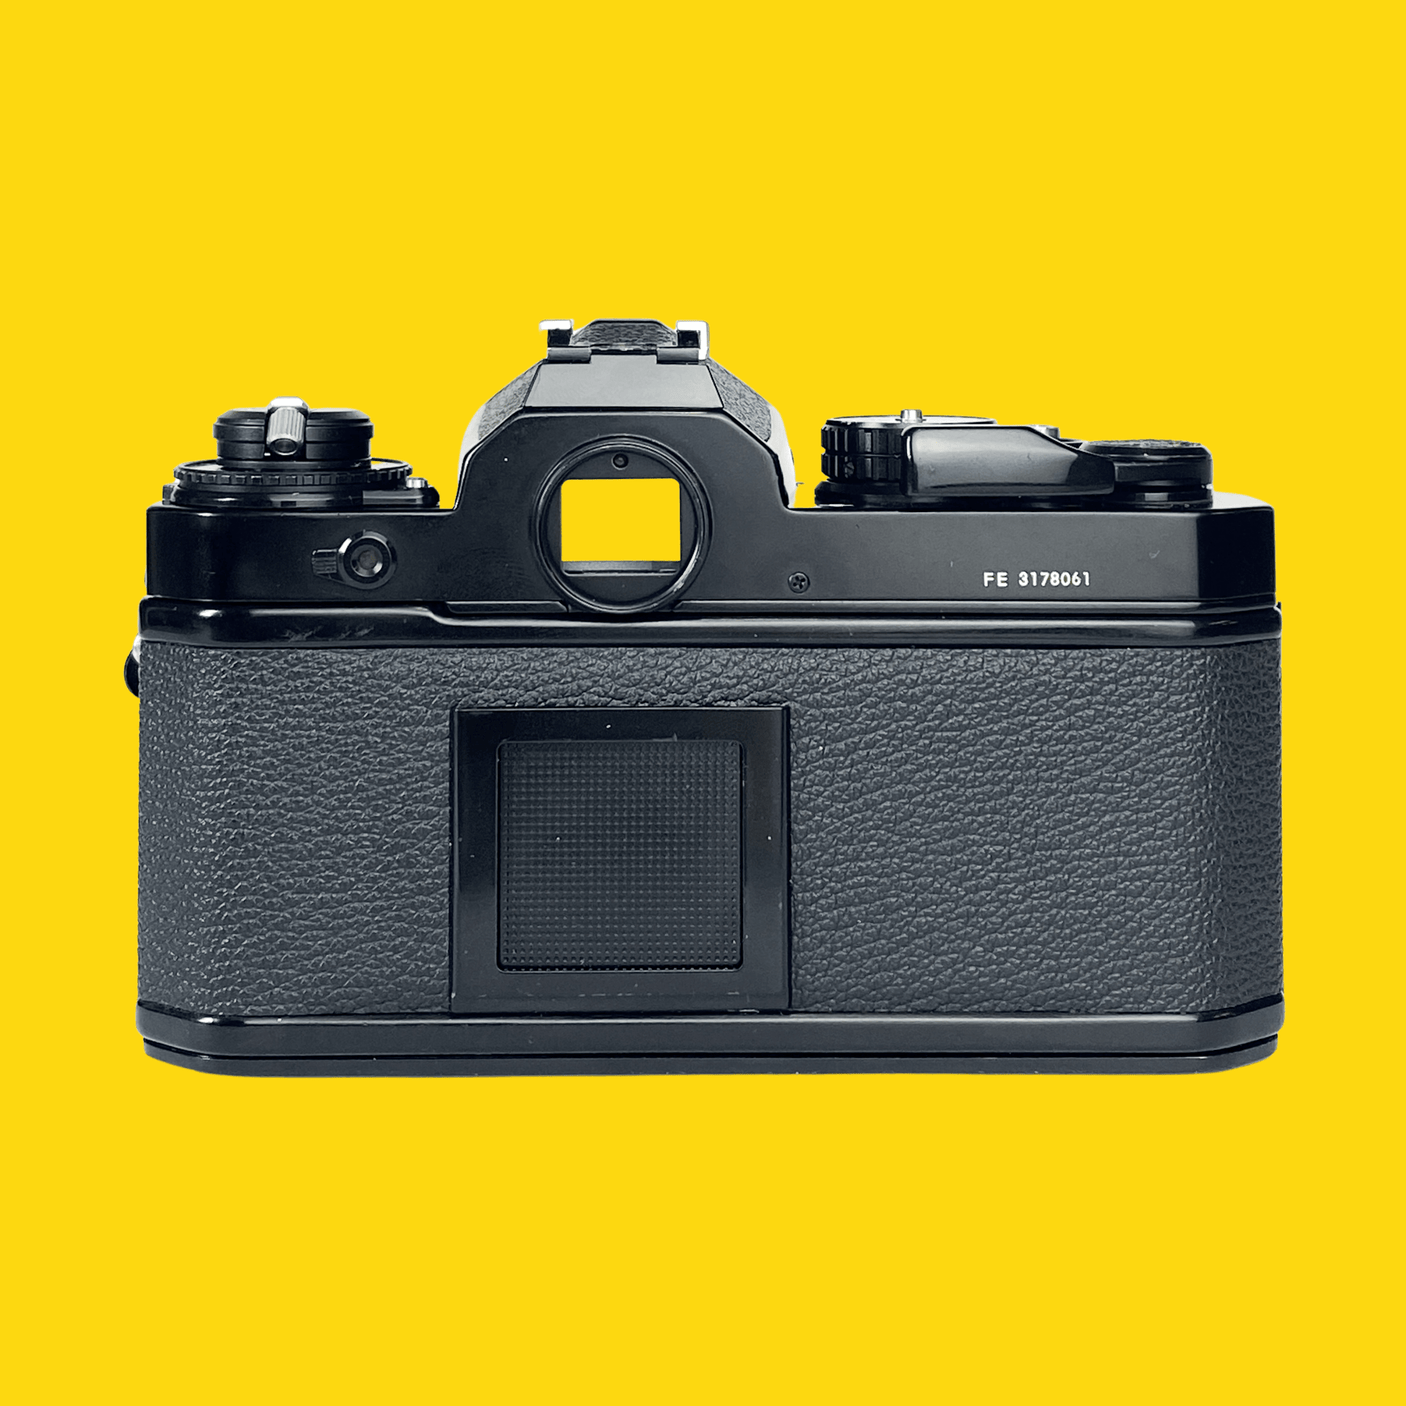 Nikon FE (Black) 35mm SLR Film Camera With Nikkor 50mm F1.8 Lens 